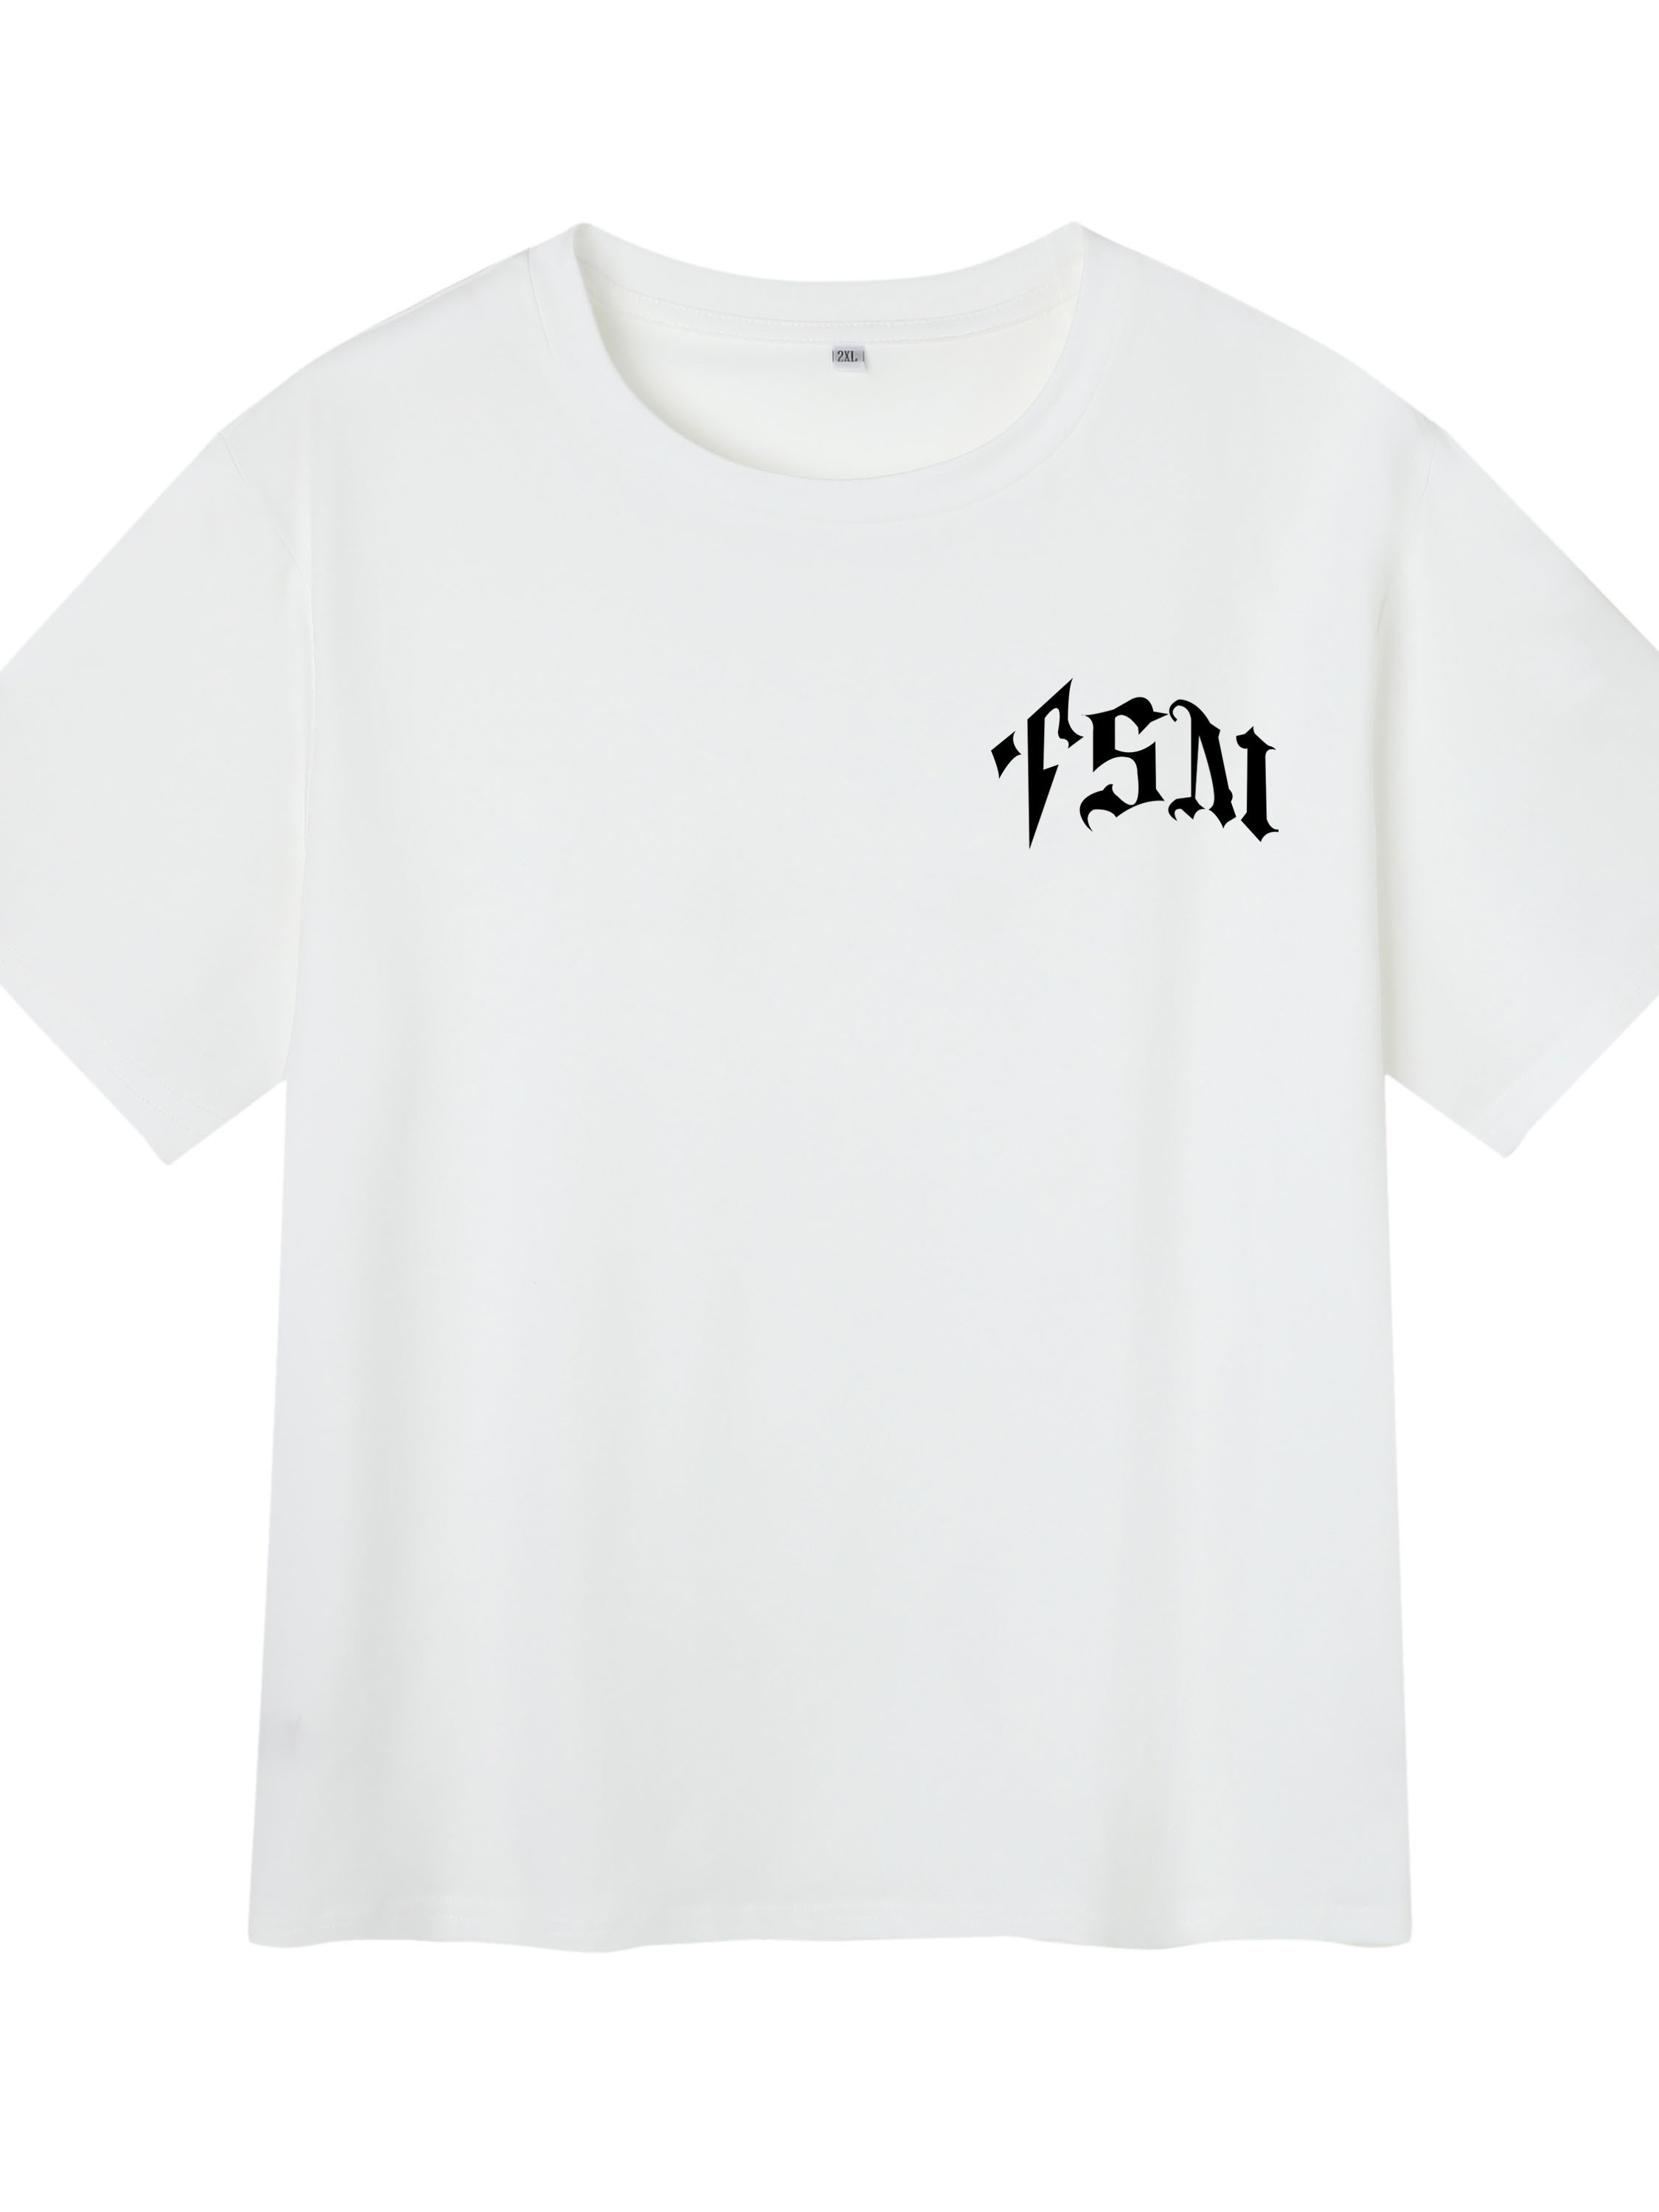 UTA' Camiseta De Hombre Con Estampado, Camiseta Gráfica De Verano